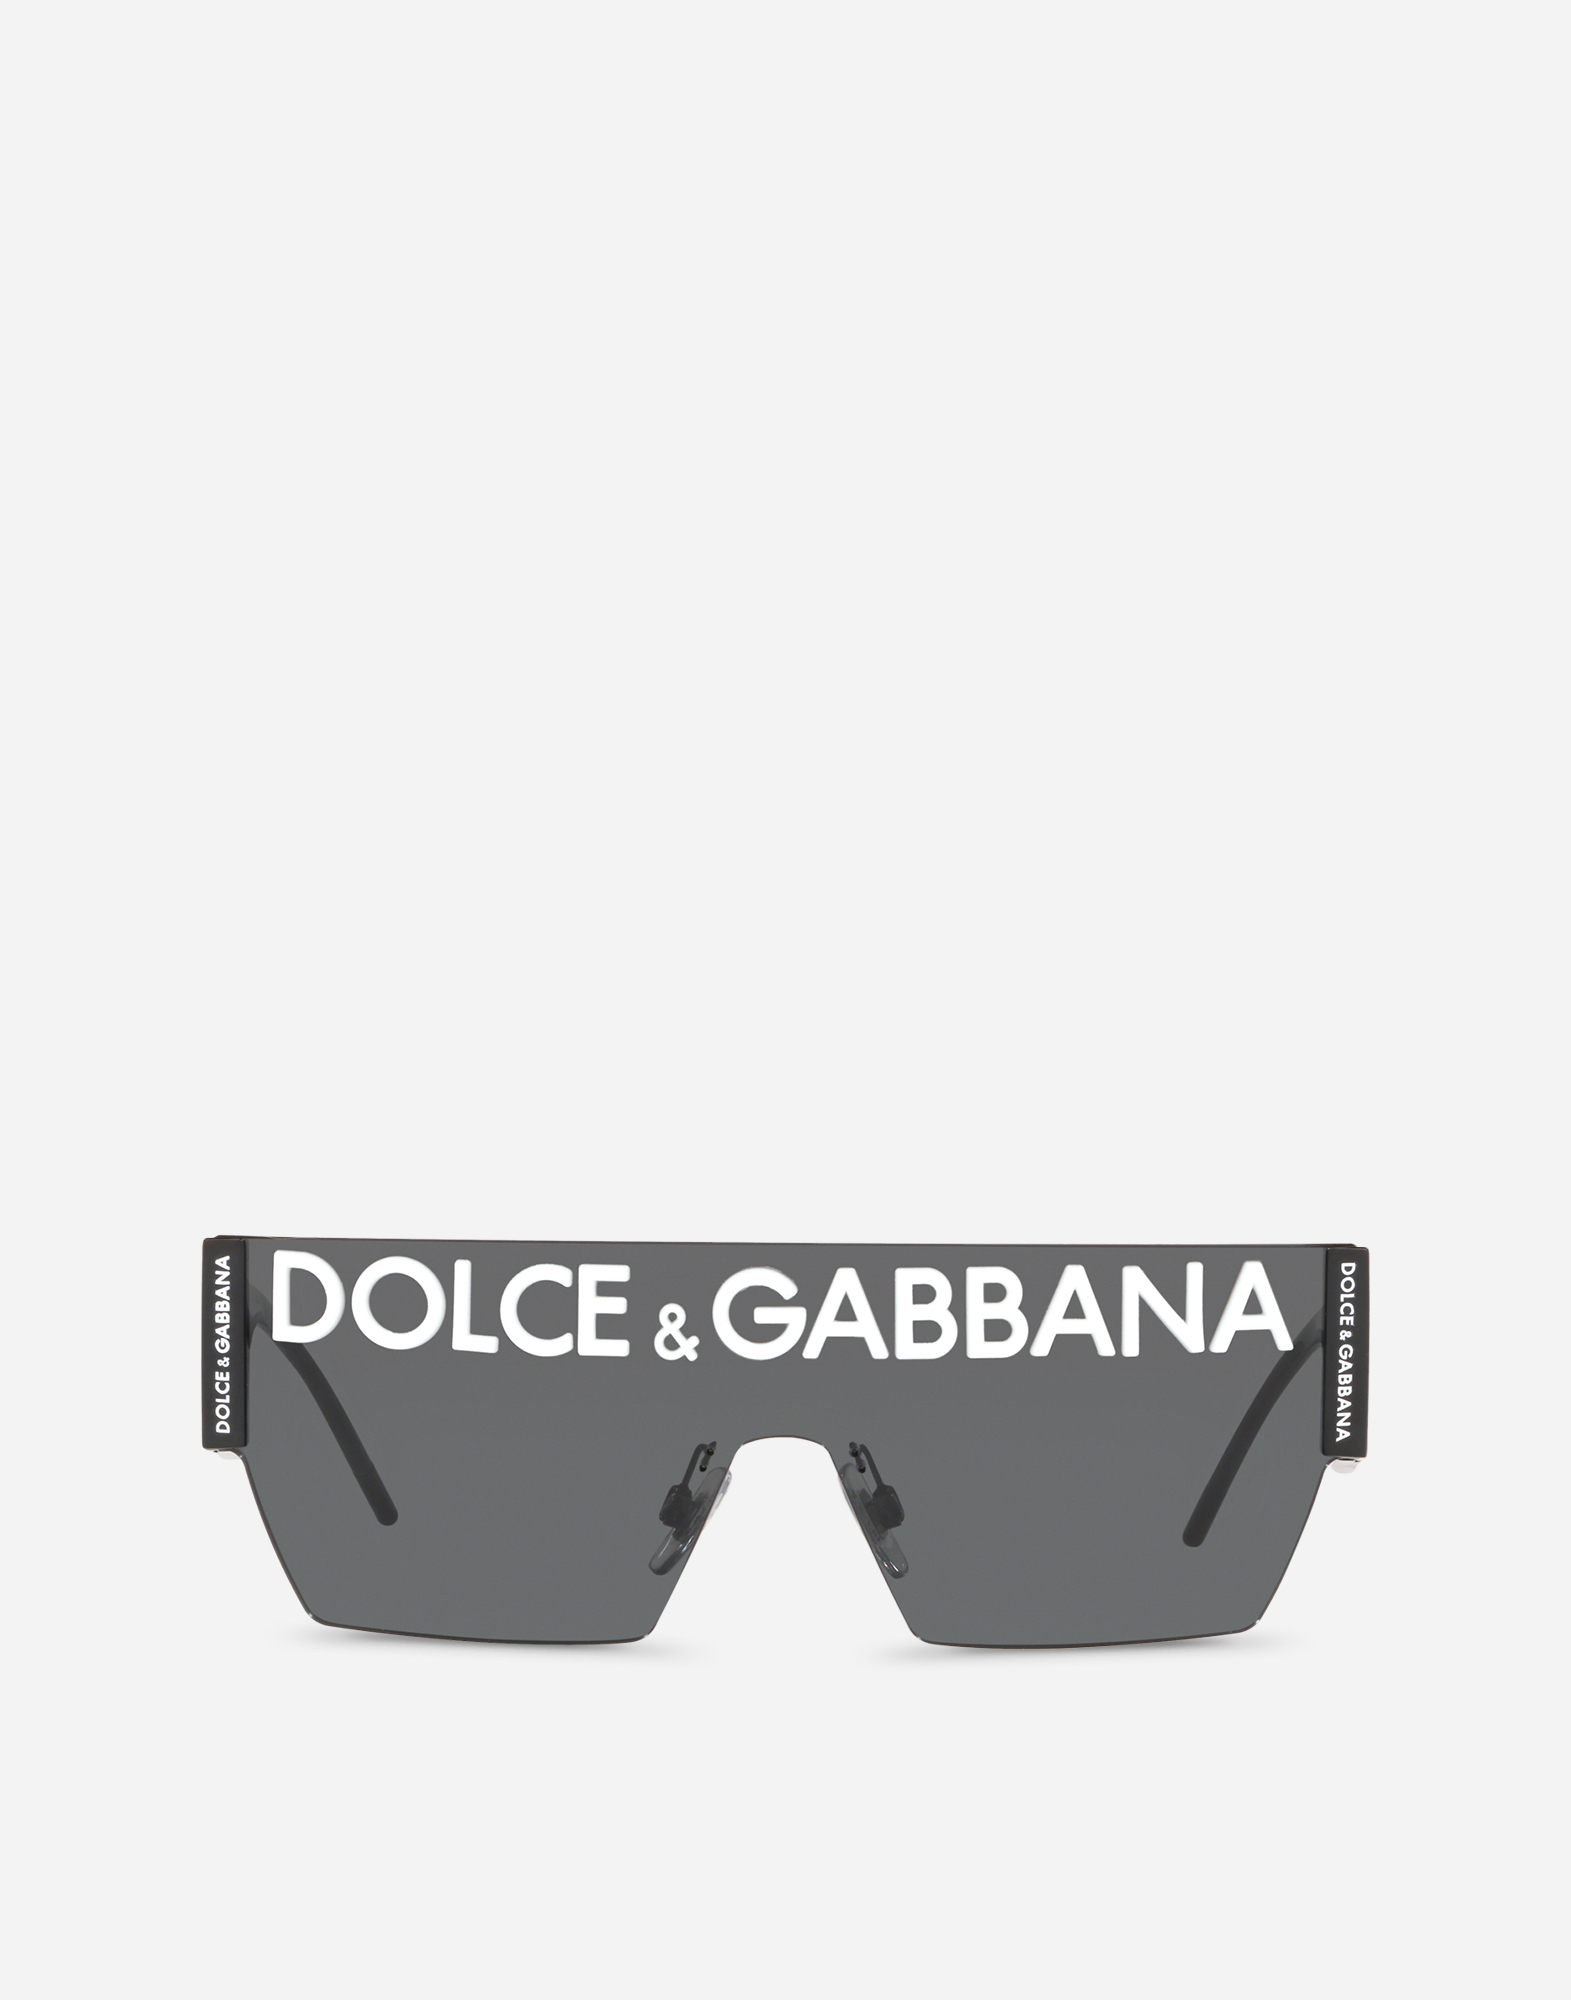 dolce and gabbana optical